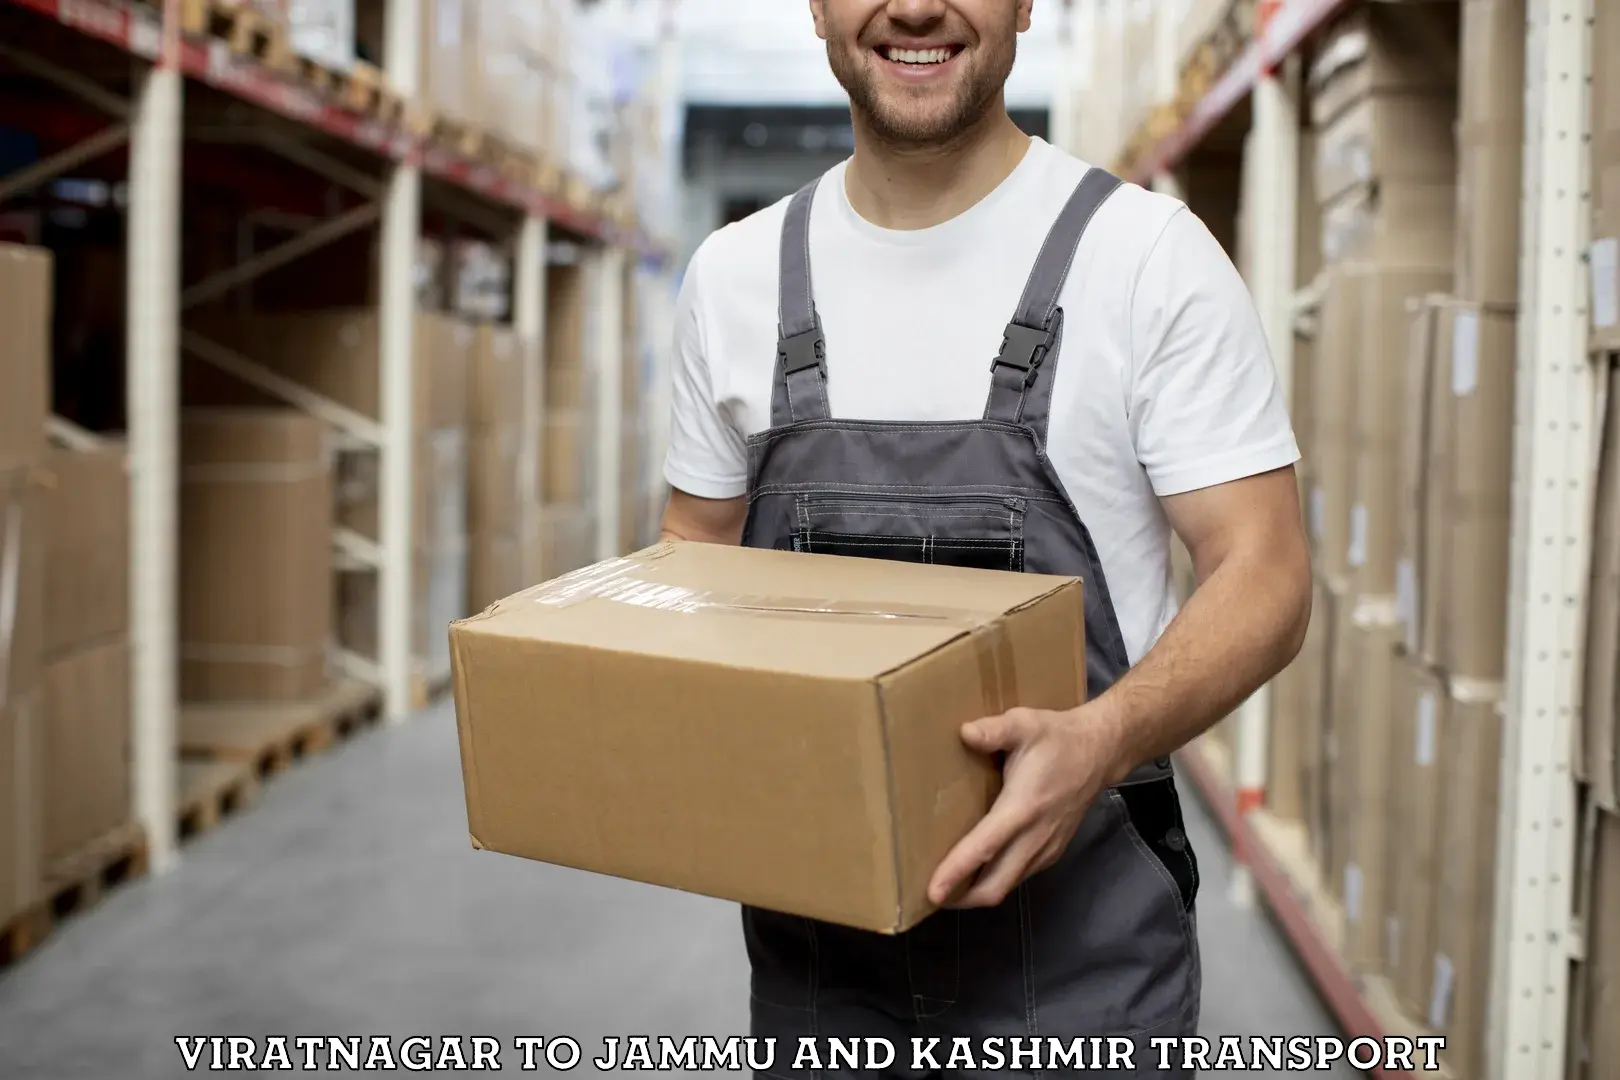 Cargo transport services Viratnagar to Jammu and Kashmir